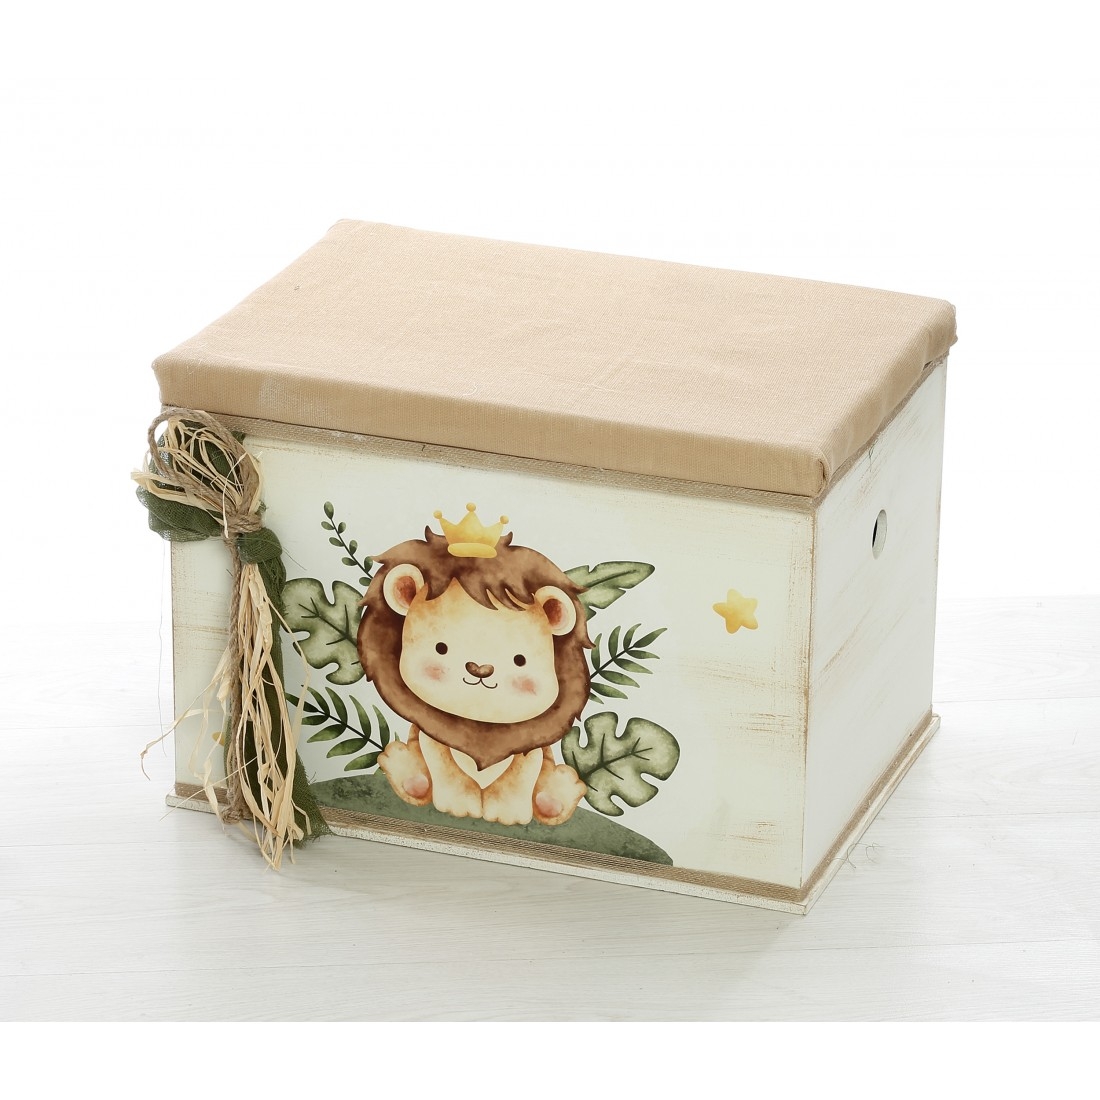 μπαουλο ξυλινο βαπτισης κουτι με λιονταρι μαξιλαρι ζουγκλα ζωάκια σαφαρι καθισματακι : 1